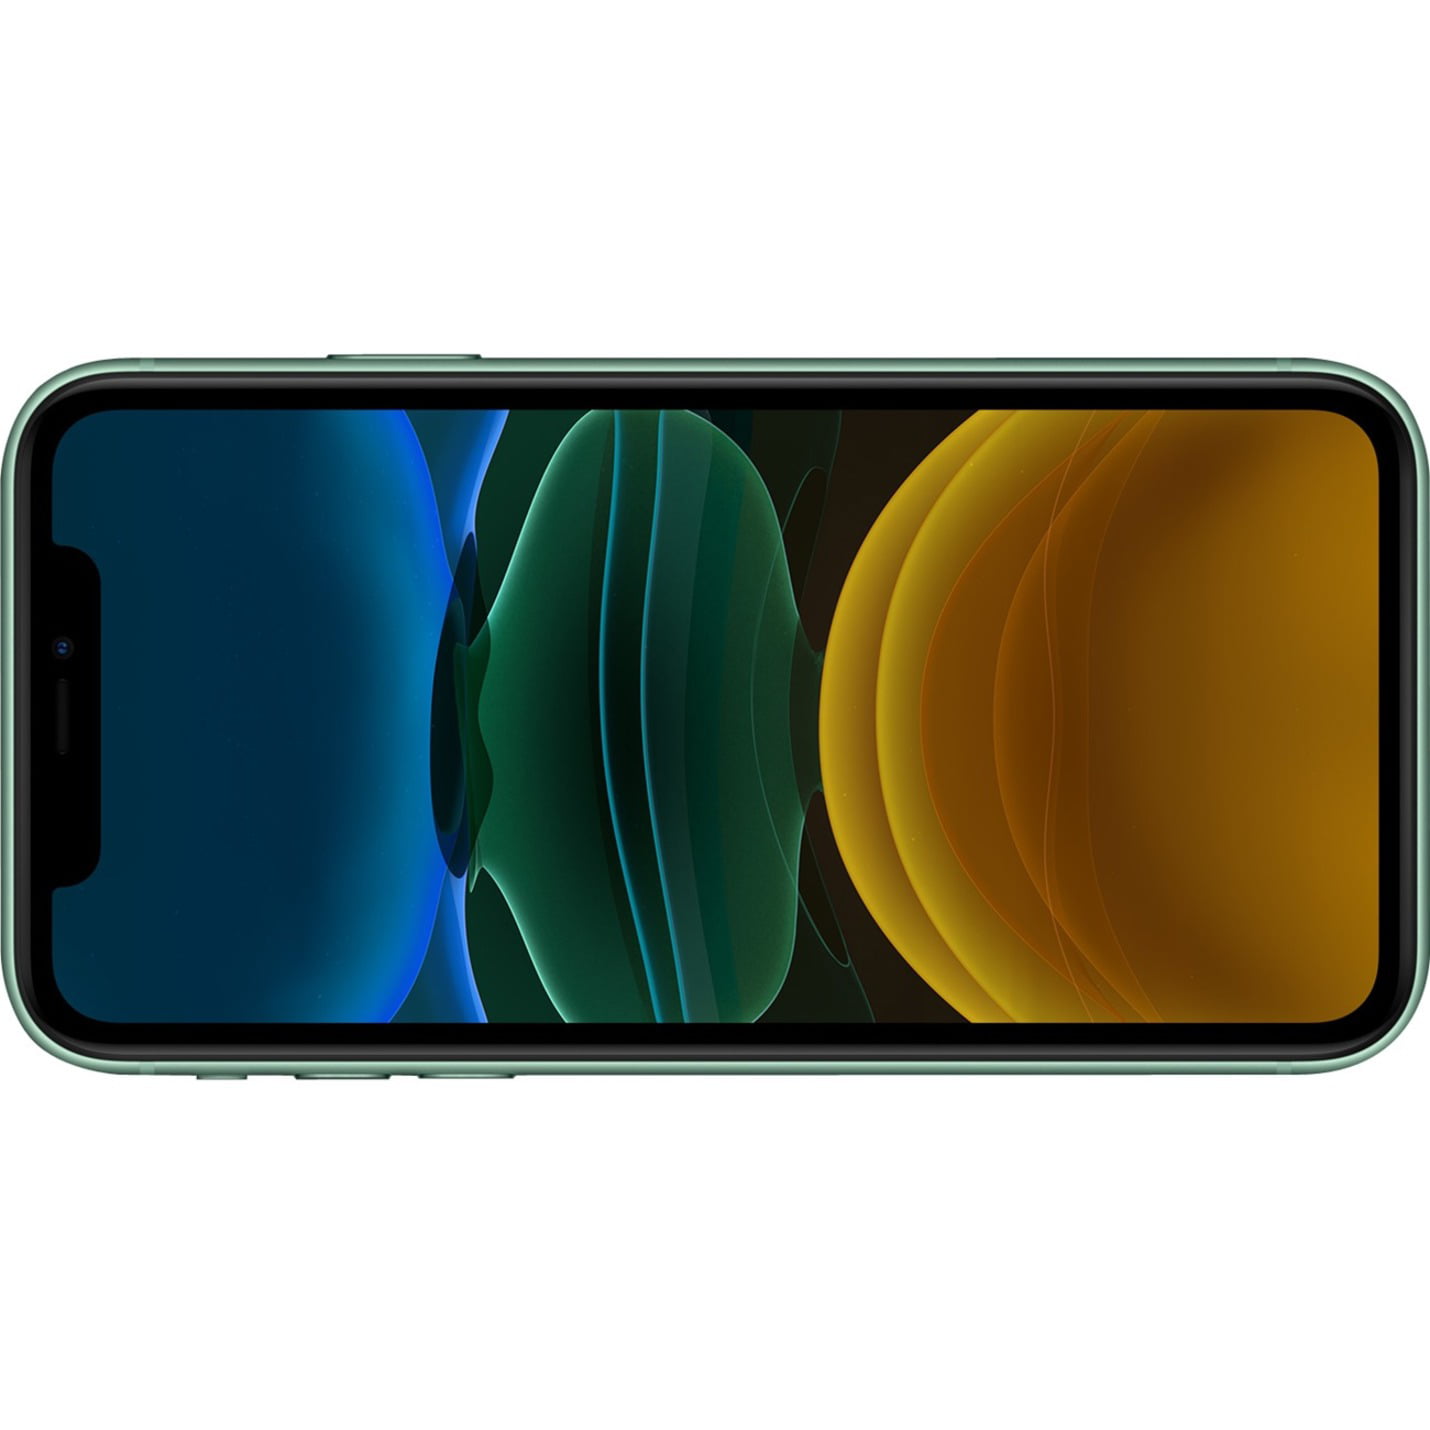 Cùng xem qua hình ảnh đẹp lung linh của iPhone 11 256 GB Smartphone để chiêm ngưỡng thiết kế tuyệt đẹp, camera siêu nét và mọi tính năng tuyệt vời khác của chiếc điện thoại này.